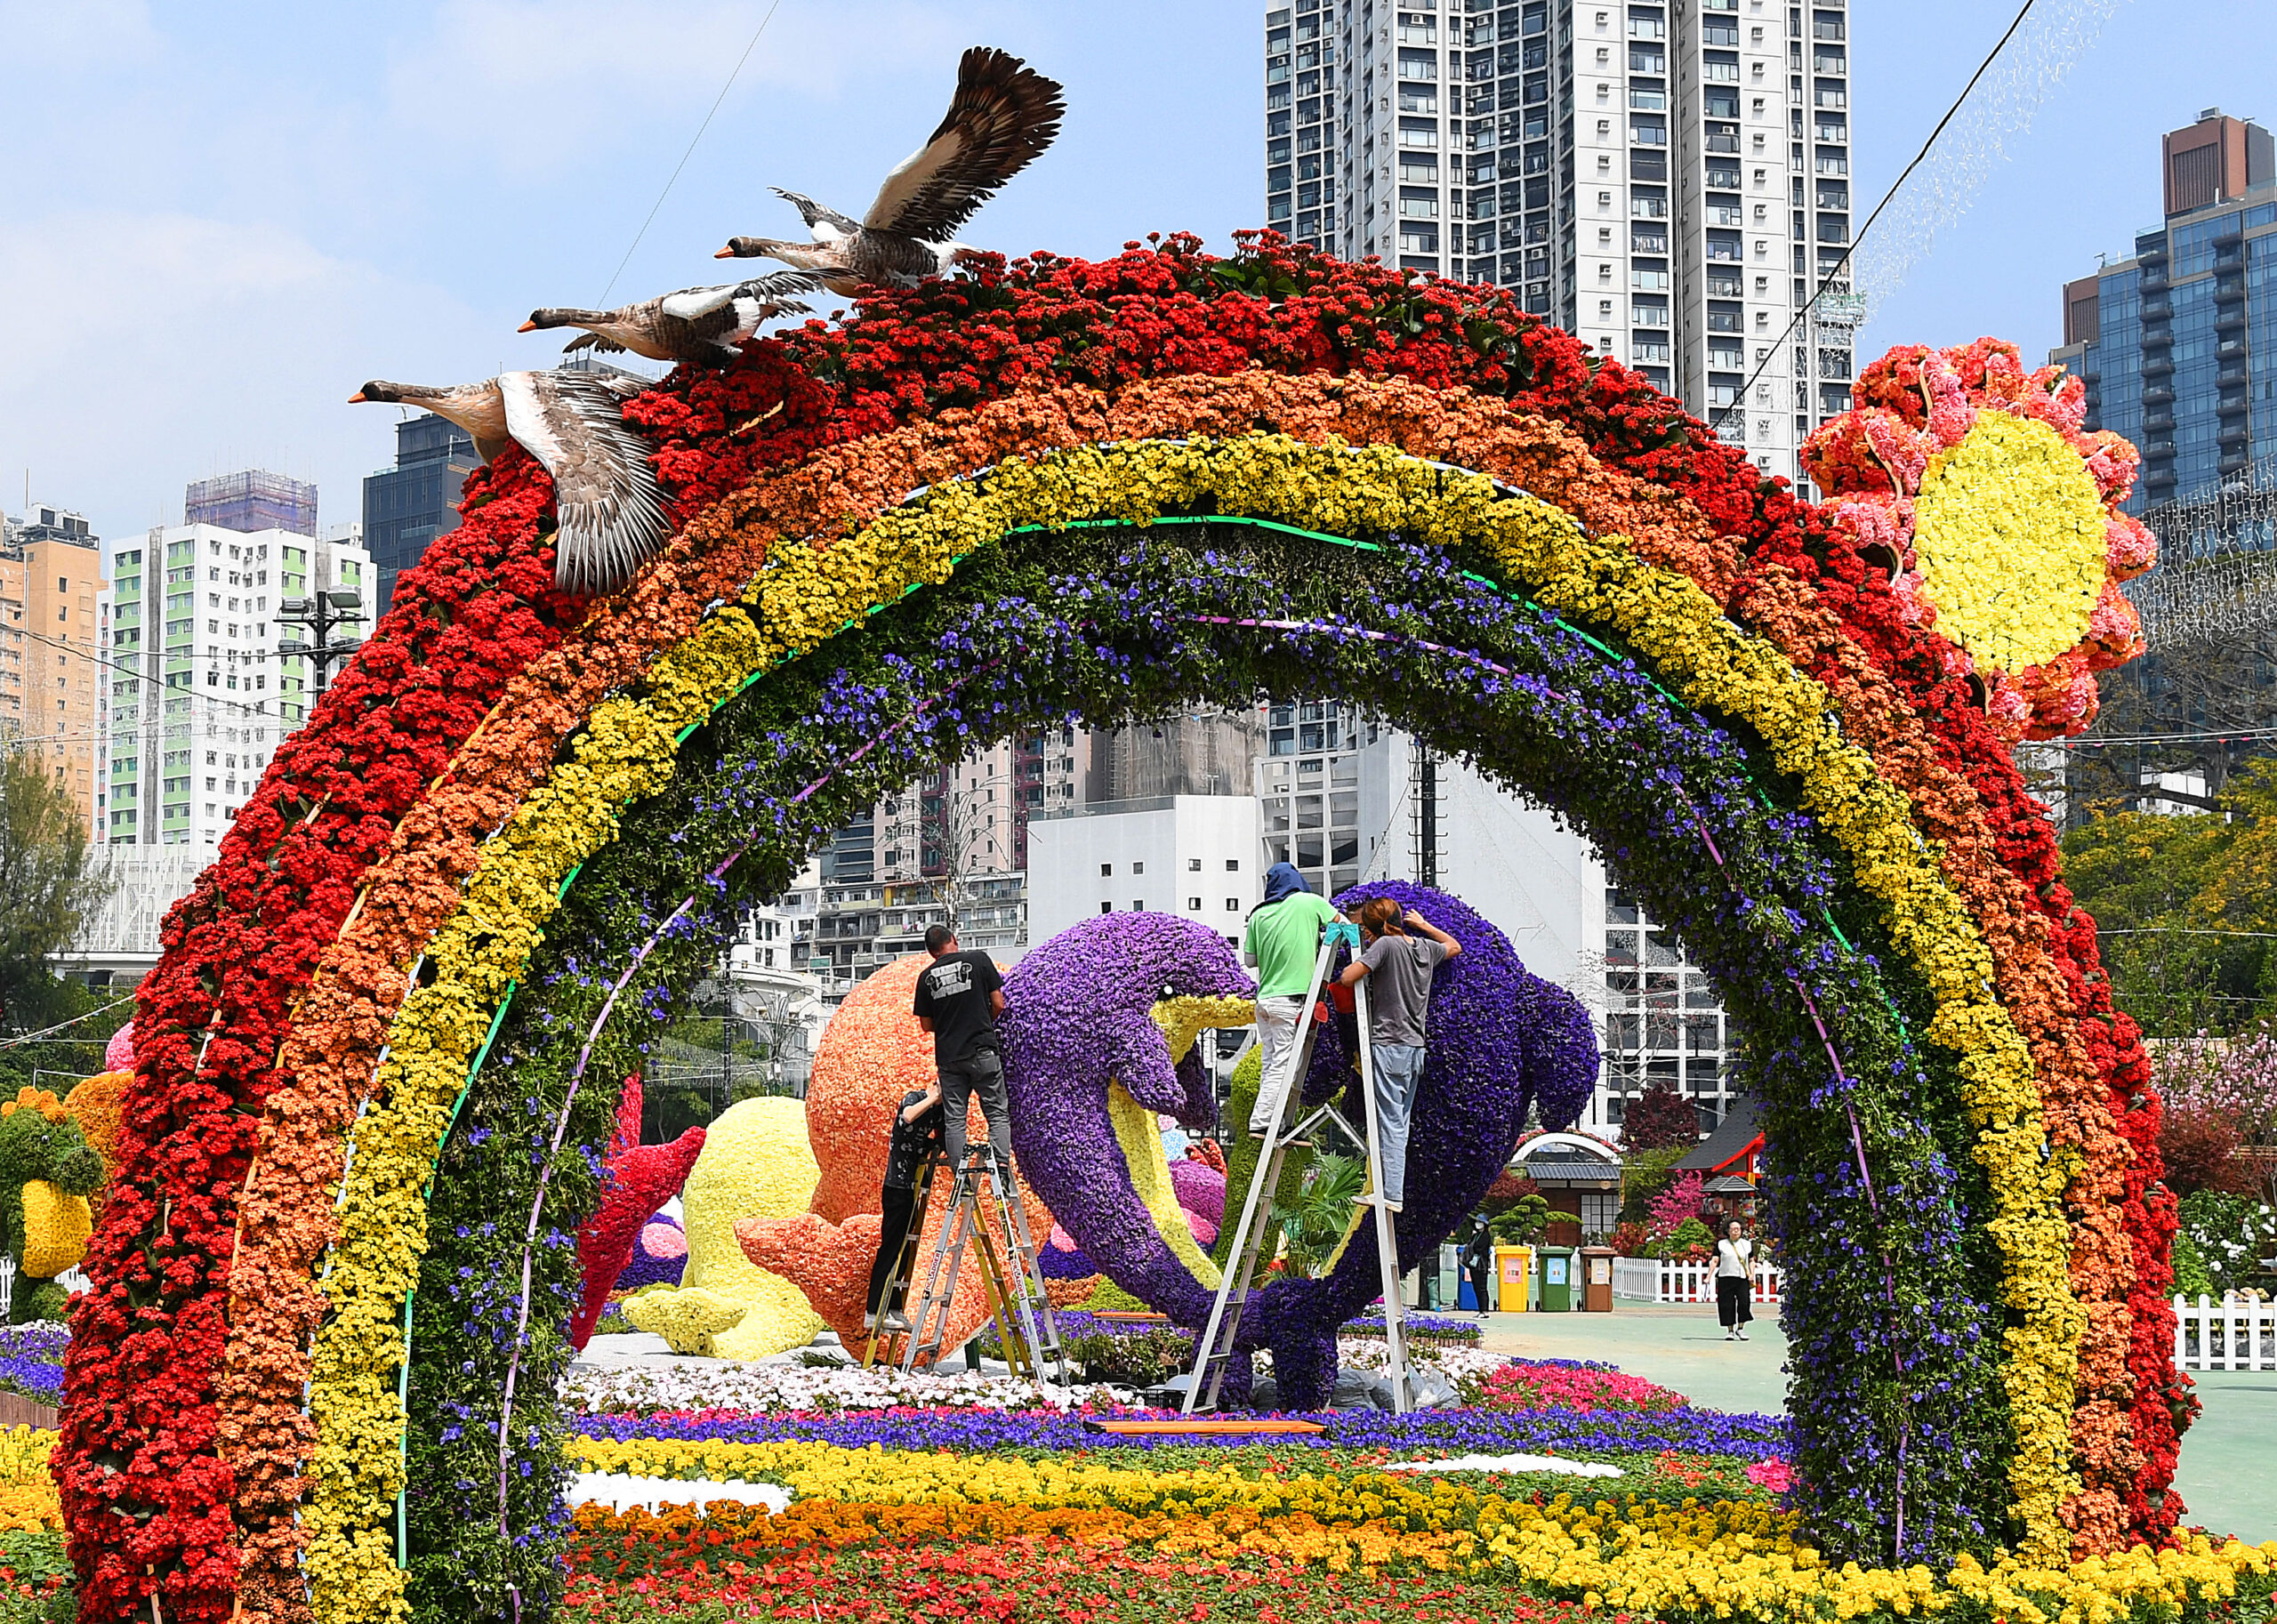 ฮ่องกงจัดเตรียม 'งานแสดงดอกไม้' ประจำปี